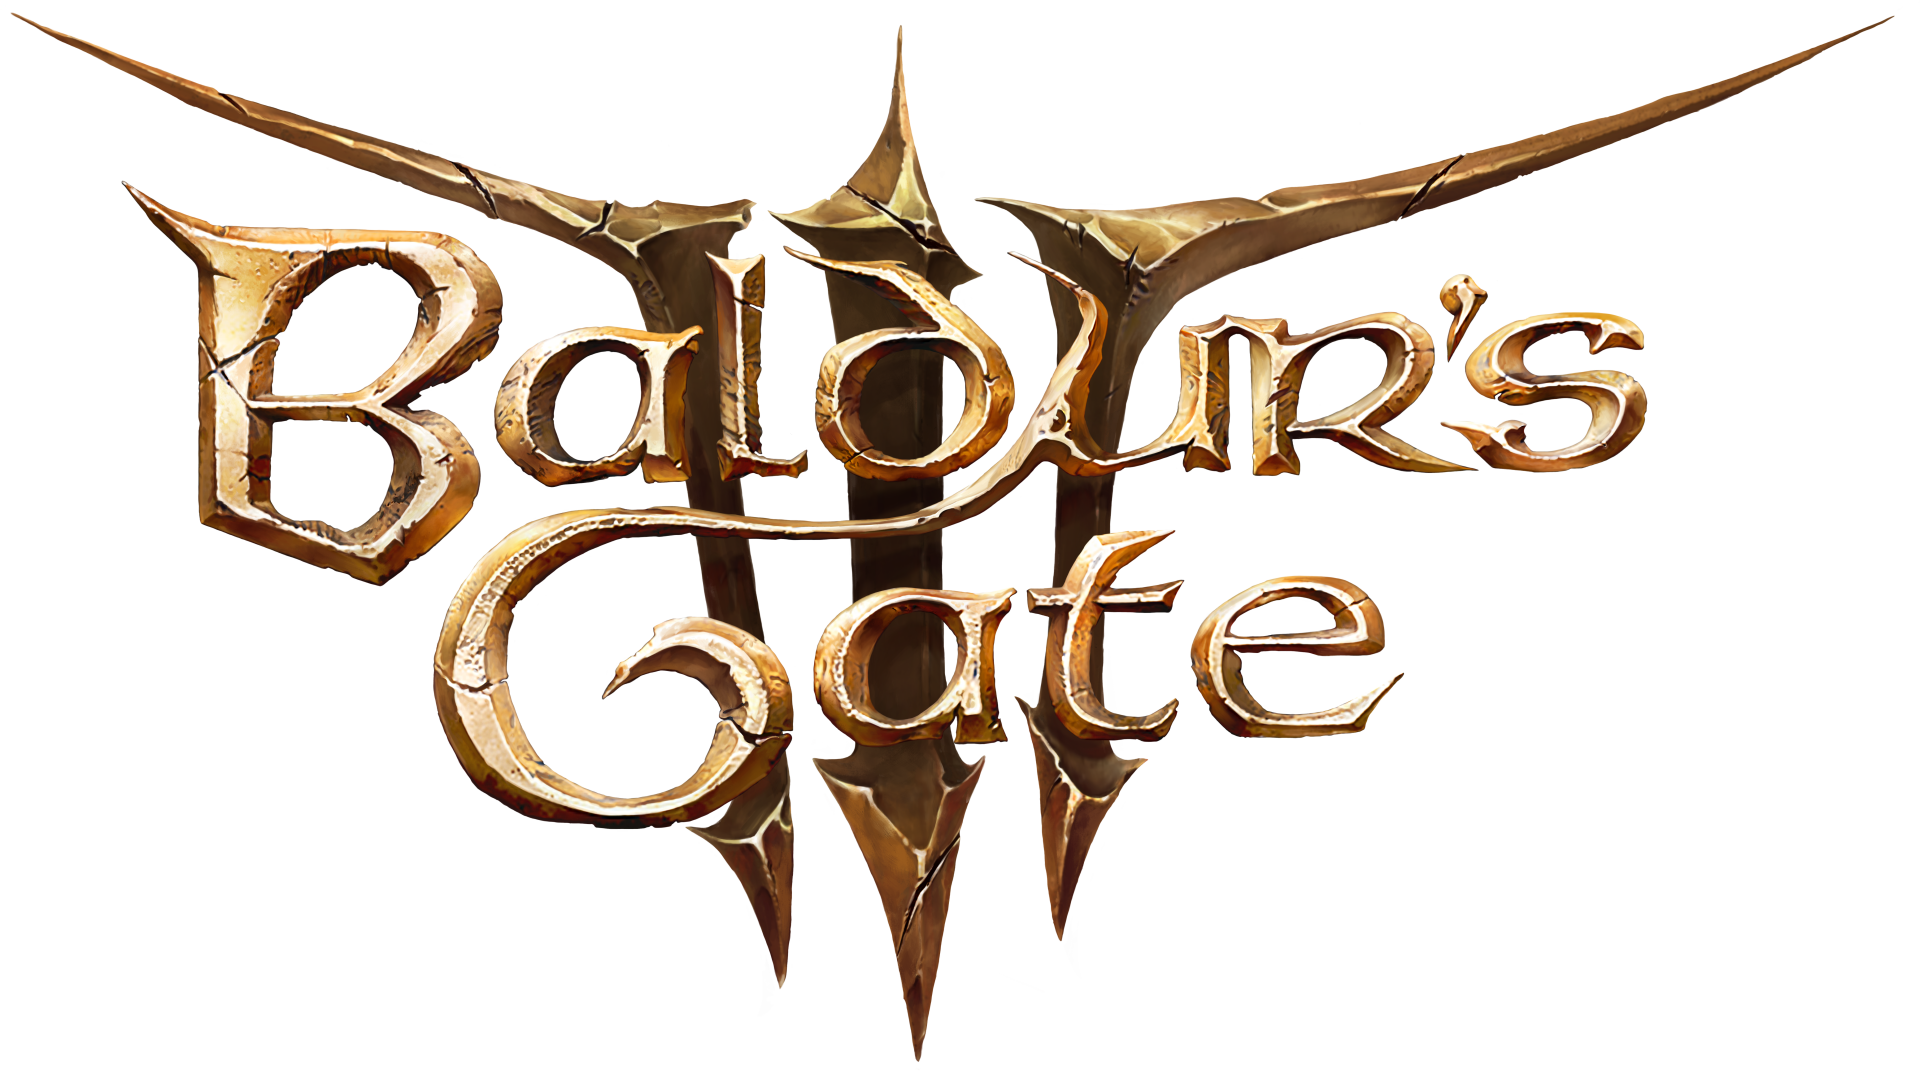 Baldur s gate 3 4.1 1.4811634. Baldur's Gate 1 logo. Baldur's Gate 3. Эмблема Baldur's Gate 3. Балдурс гейт 3 лого.